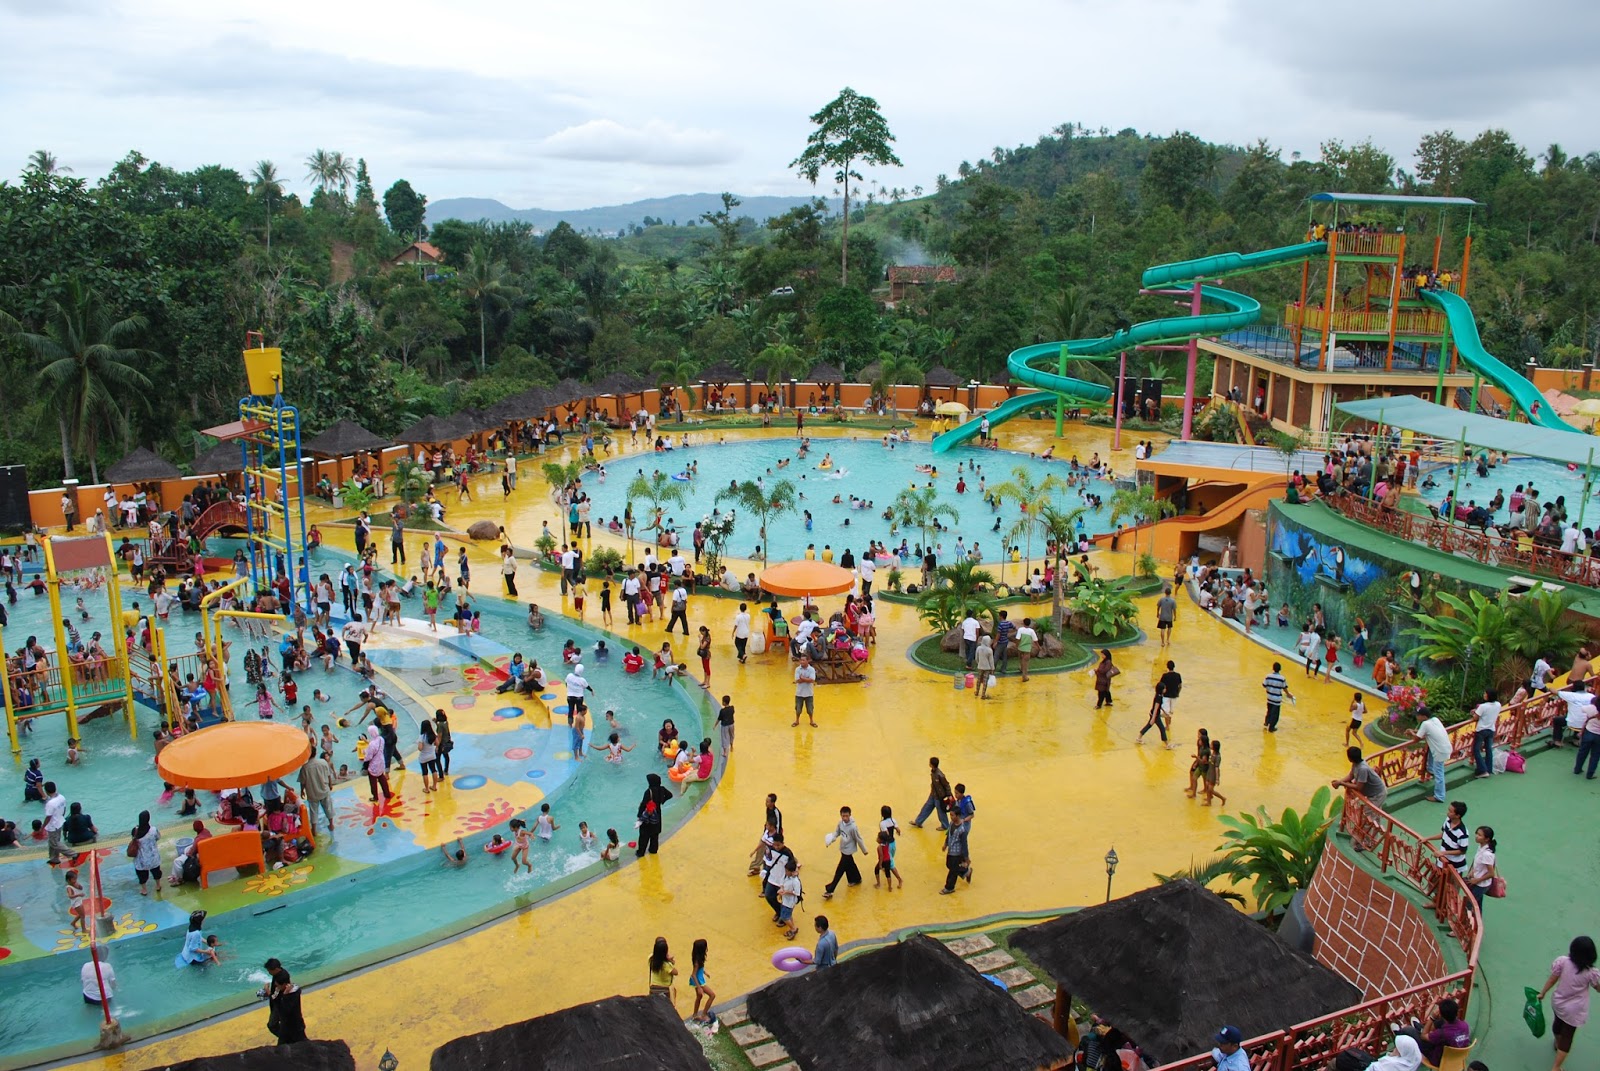 Tempat Wisata Yang Cocok Untuk Keluarga Di Jawa Timur